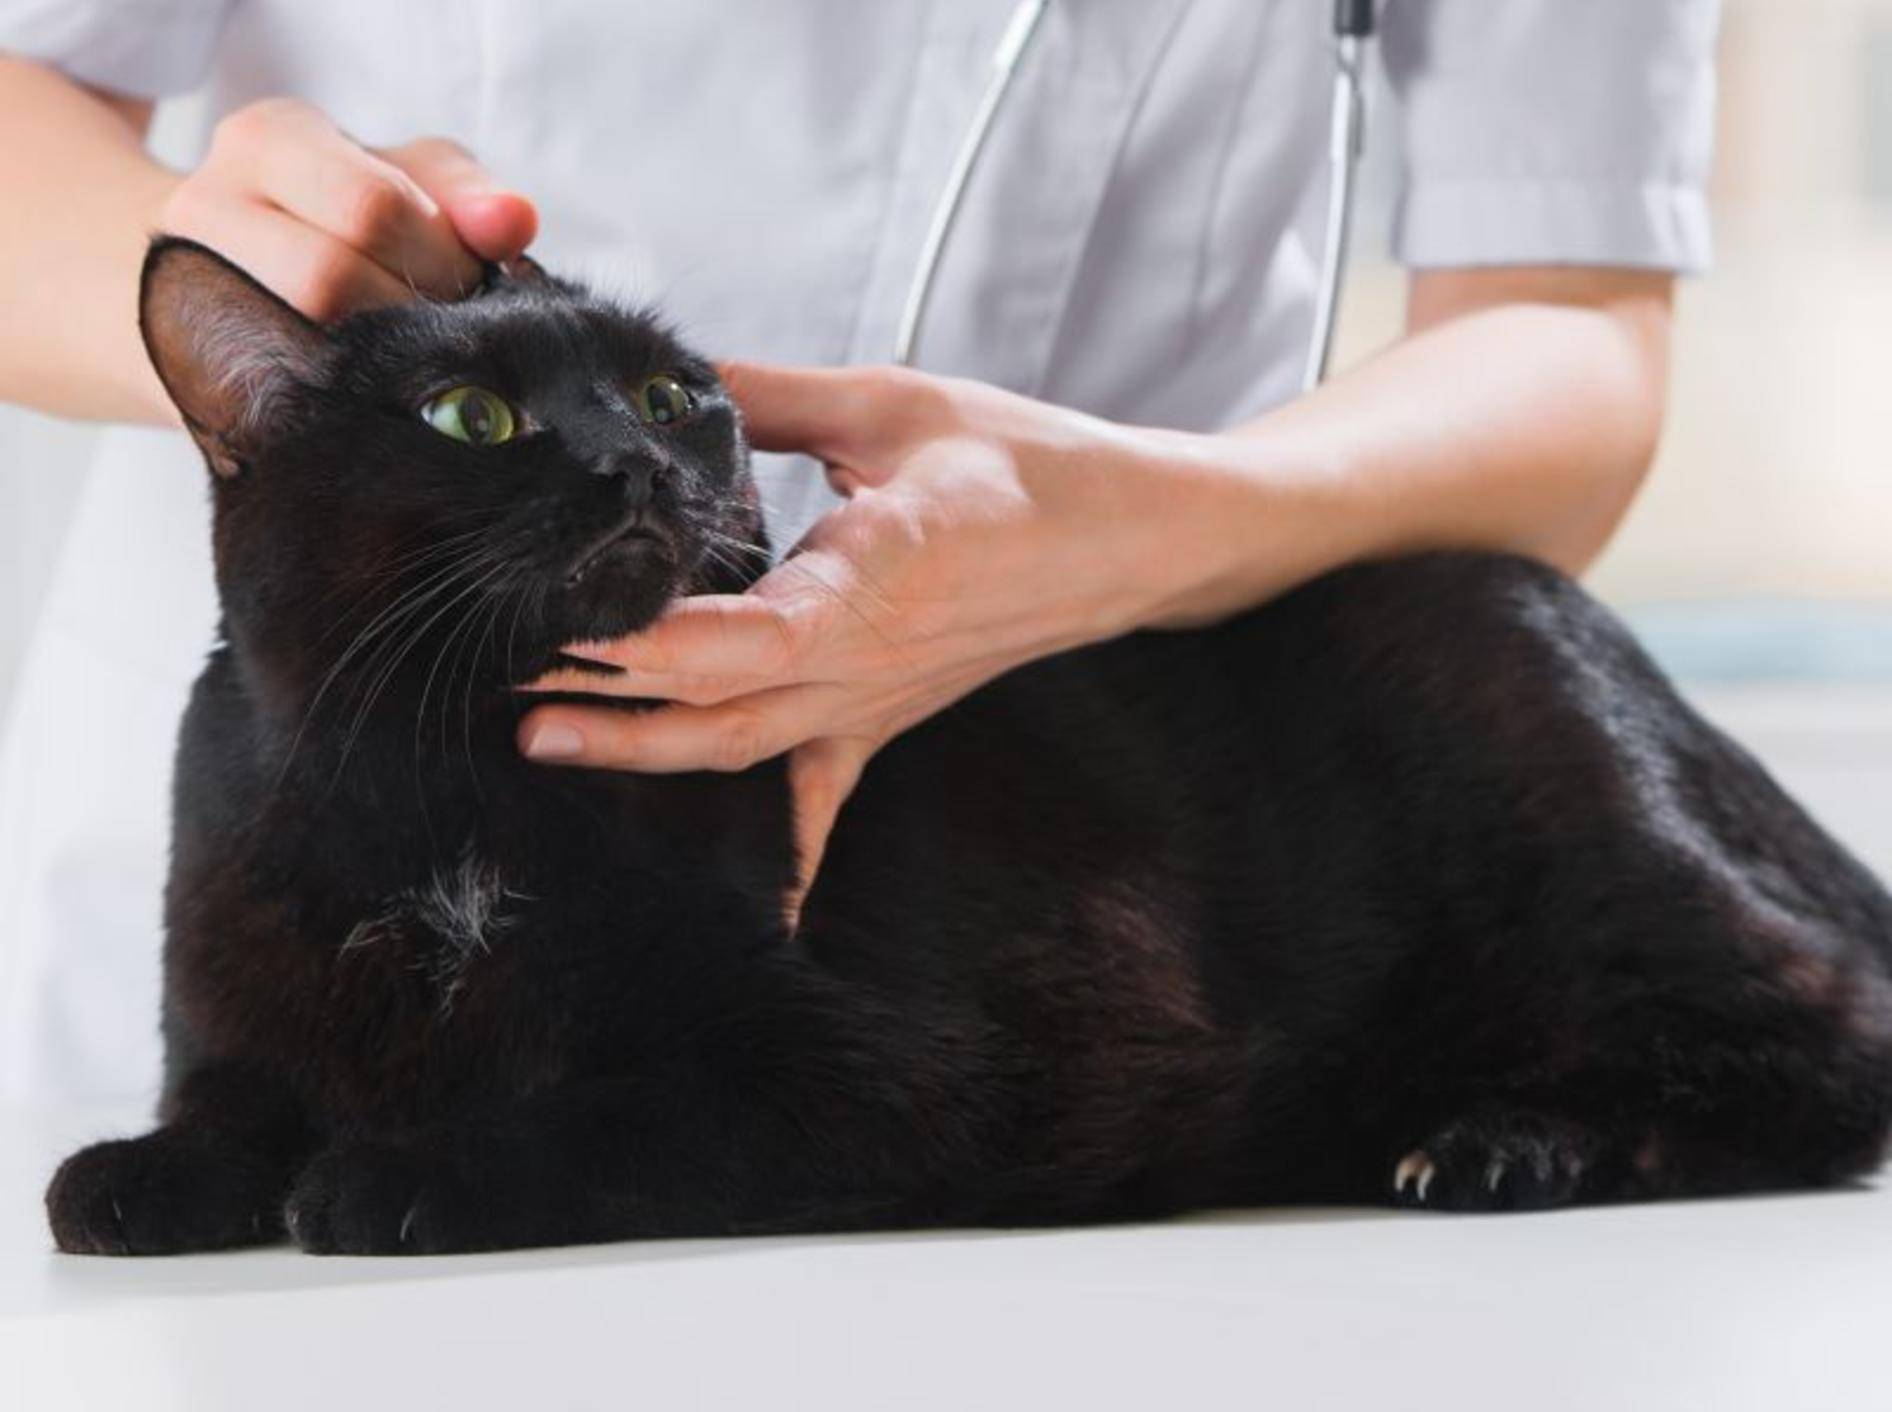 Symptome eines Ohrmilbenbefalls sollten mit dem Tierarzt abgeklärt werden — Bild: Shutterstock / Hasloo Group Production Studio